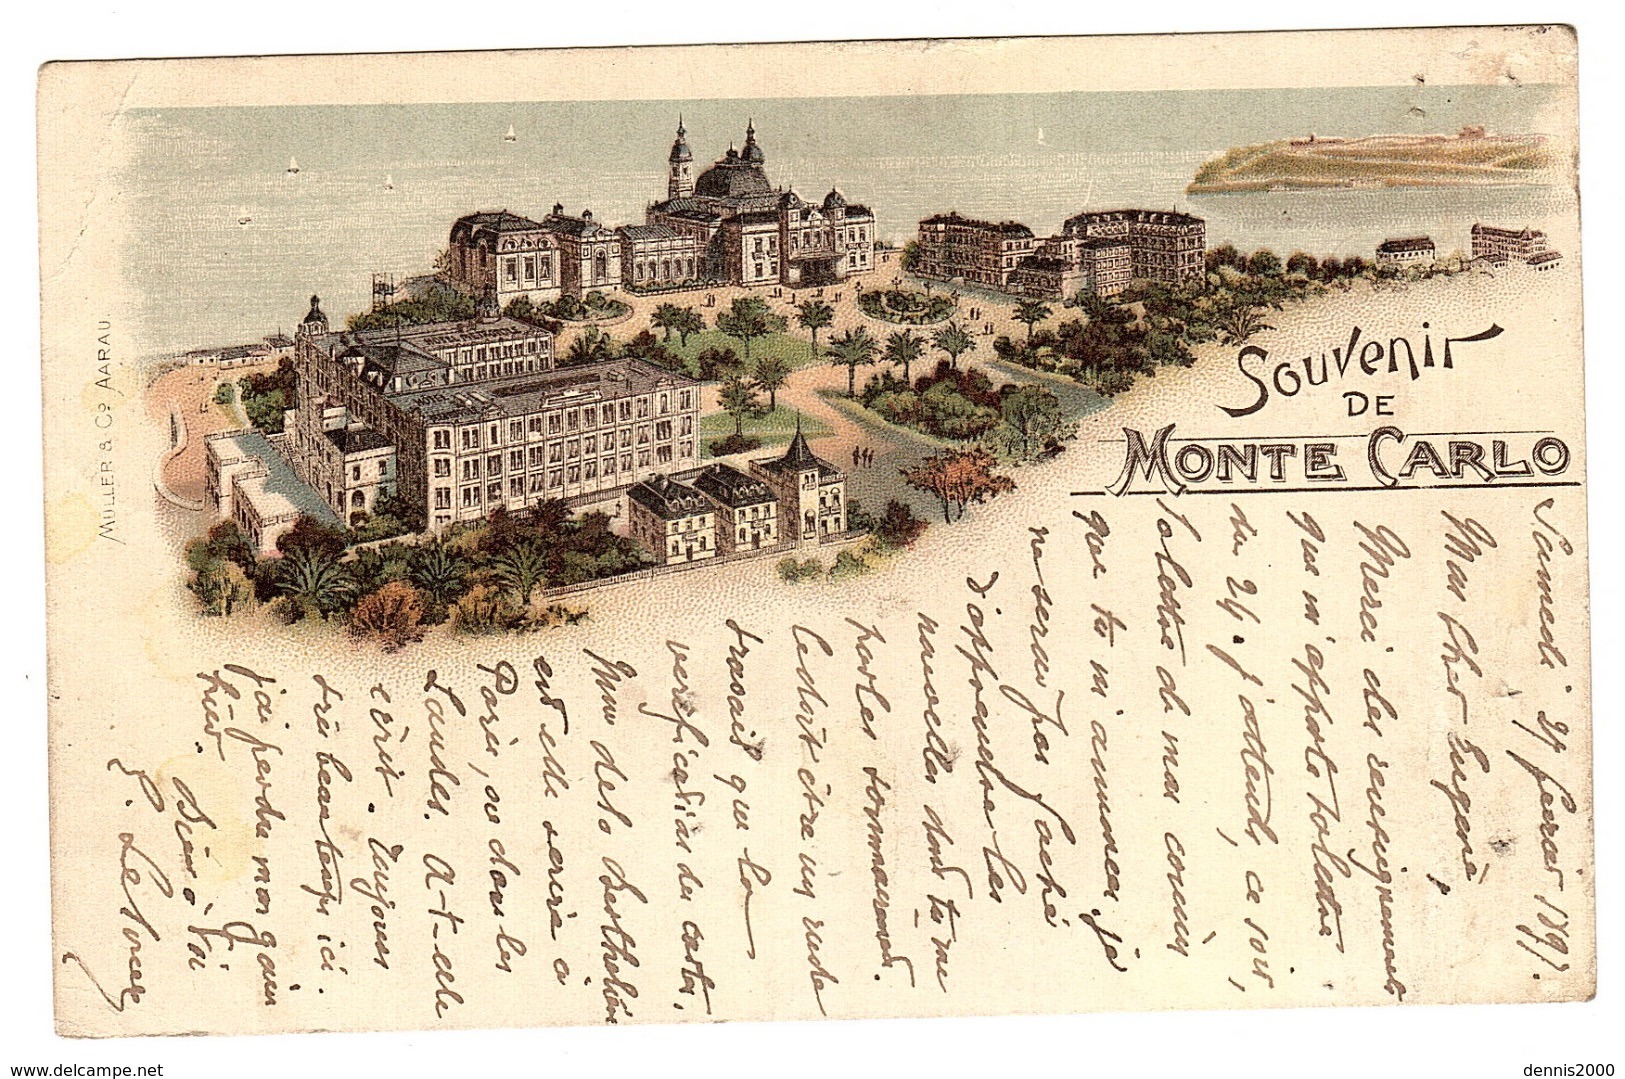 MONTE CARLO - Souvenir De Monte Carlo - Vue Générale - Oblit. 1897 - Ed. Muller & Co, Aarau - Monte-Carlo